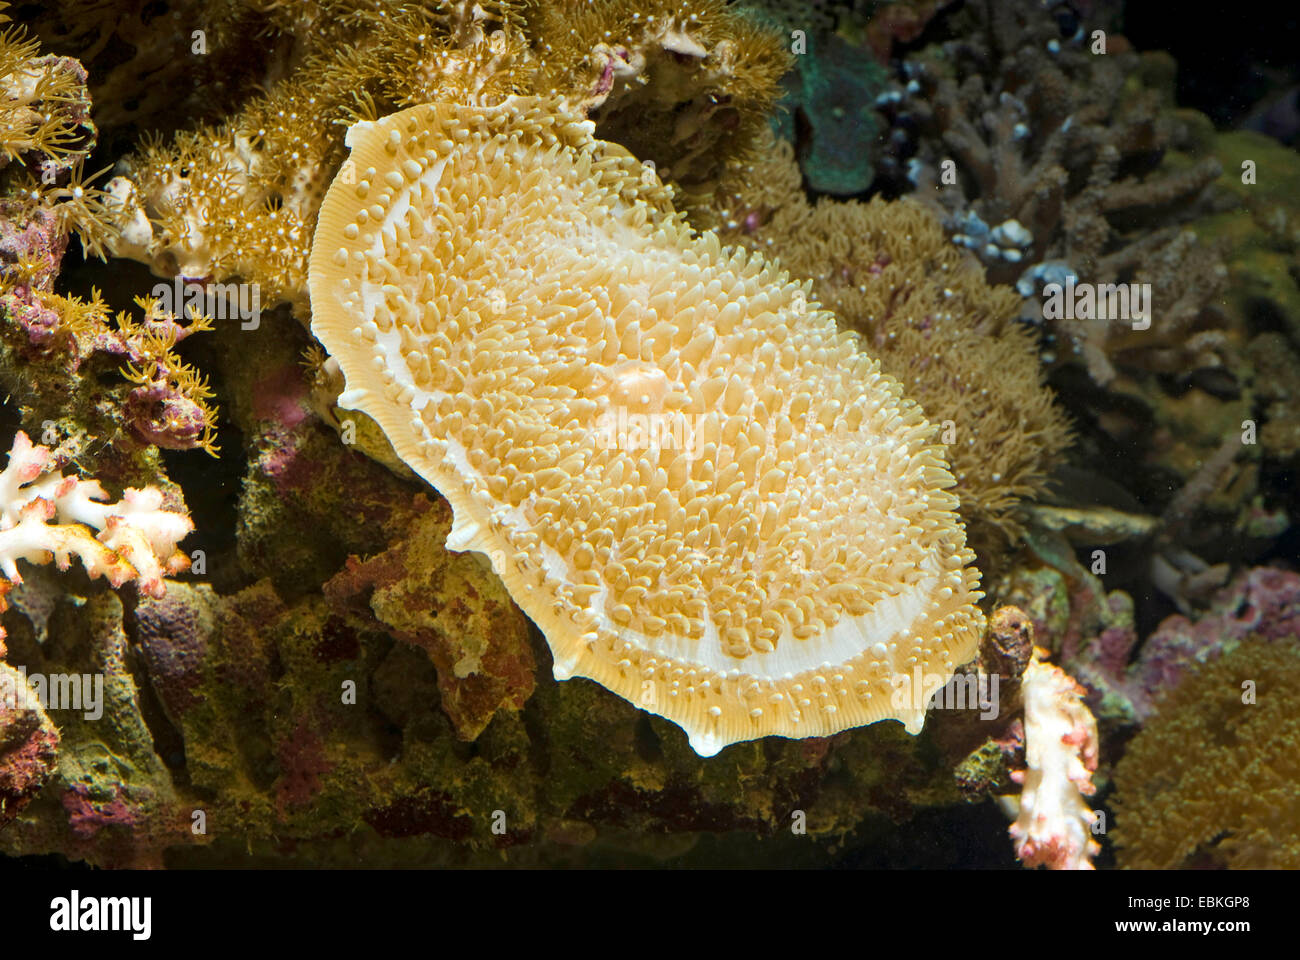 Tasse géante, oreilles d'éléphant géantes (Amplexidiscus fenestrafer corail champignon), close-up view Banque D'Images